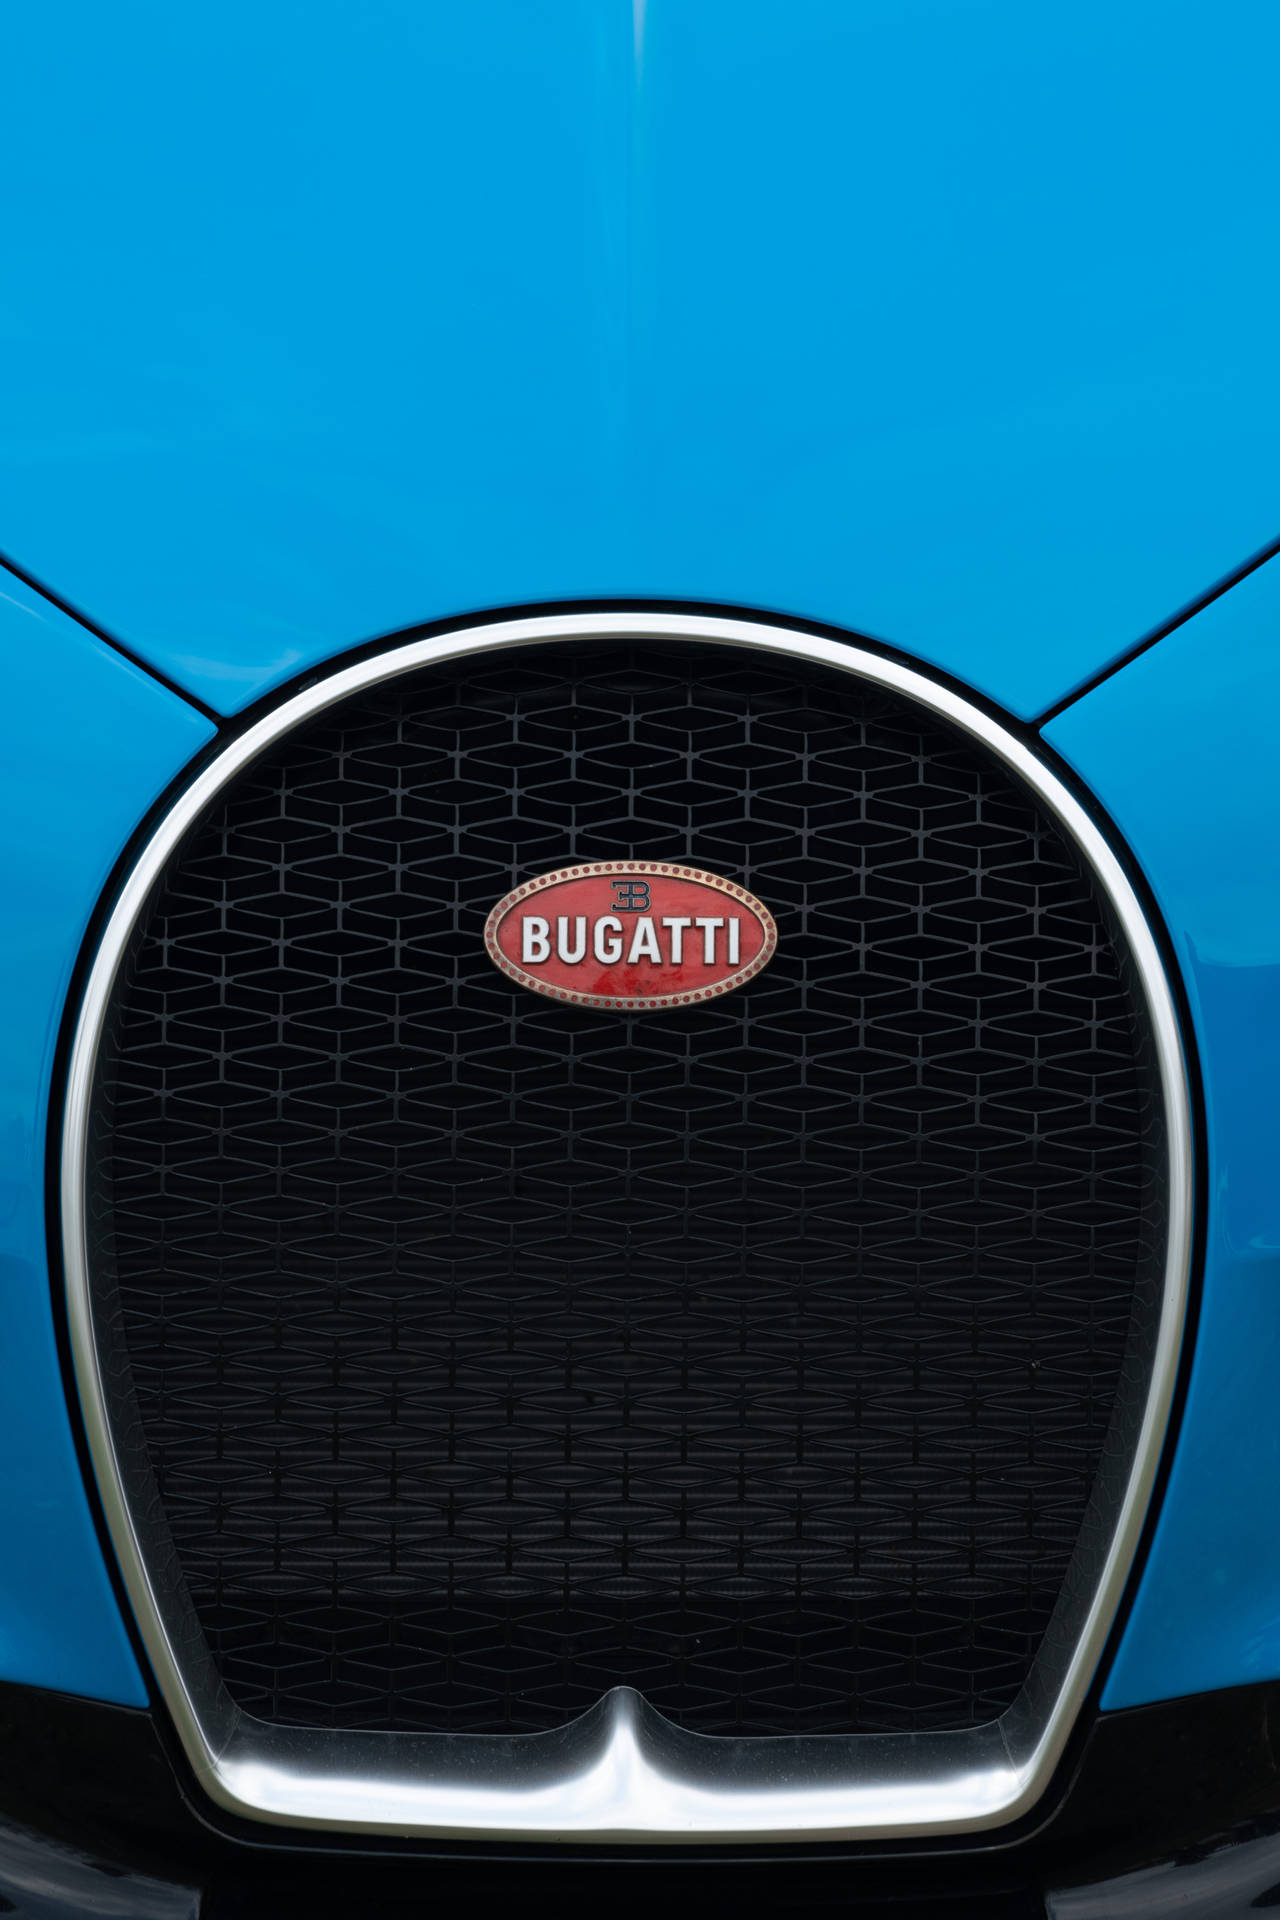 4041X6062 Bugatti Wallpaper and Background